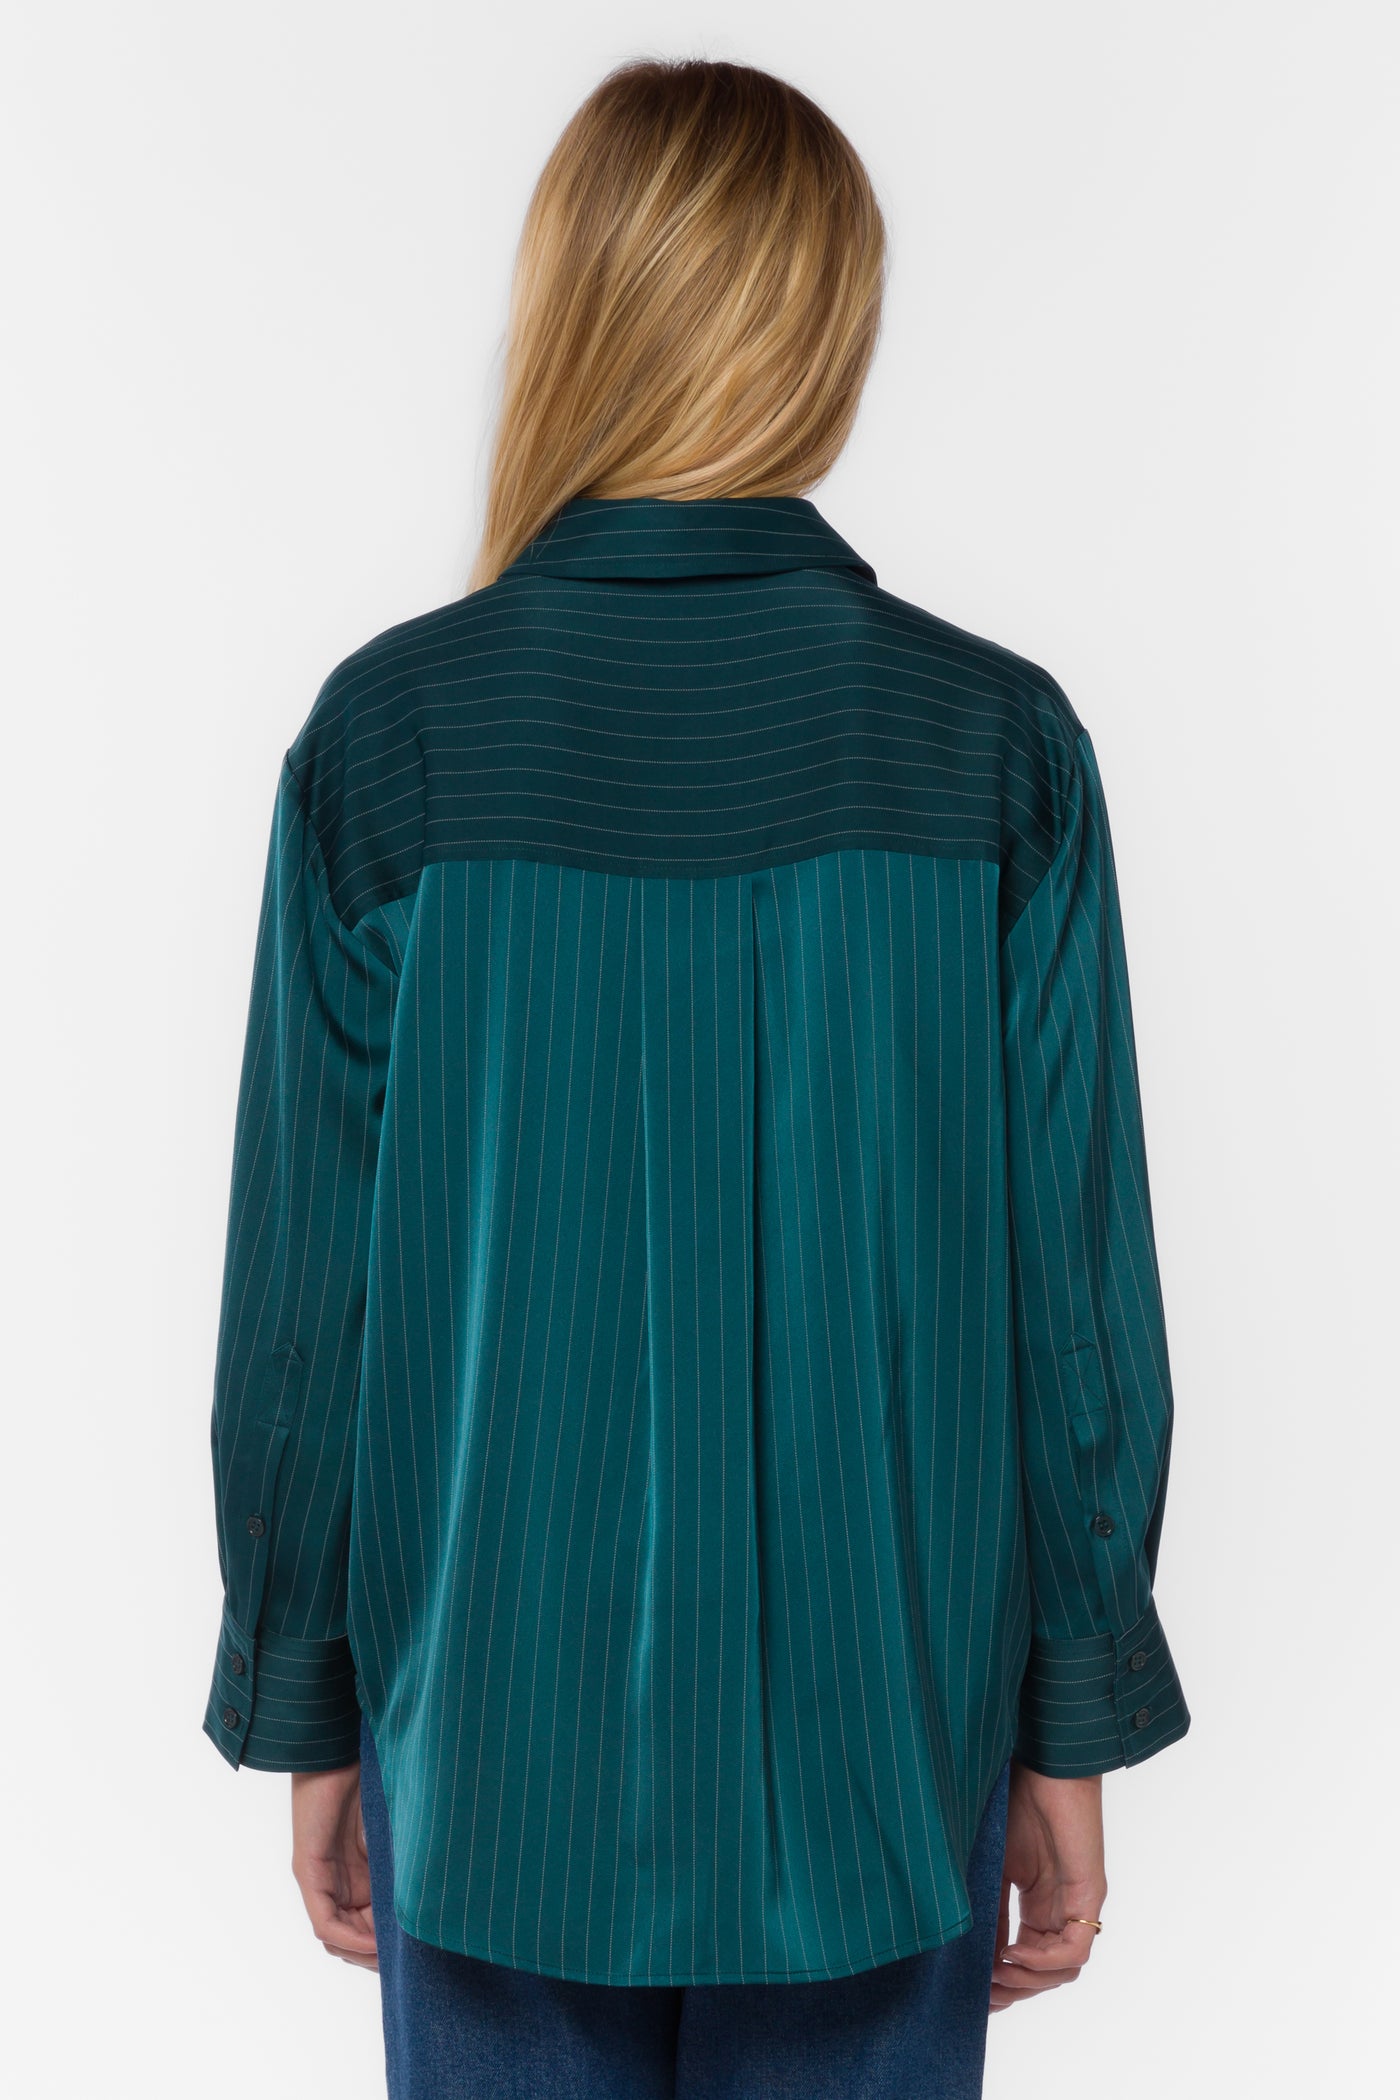 Sutton Green Stripe Shirt - Tops - Velvet Heart Clothing